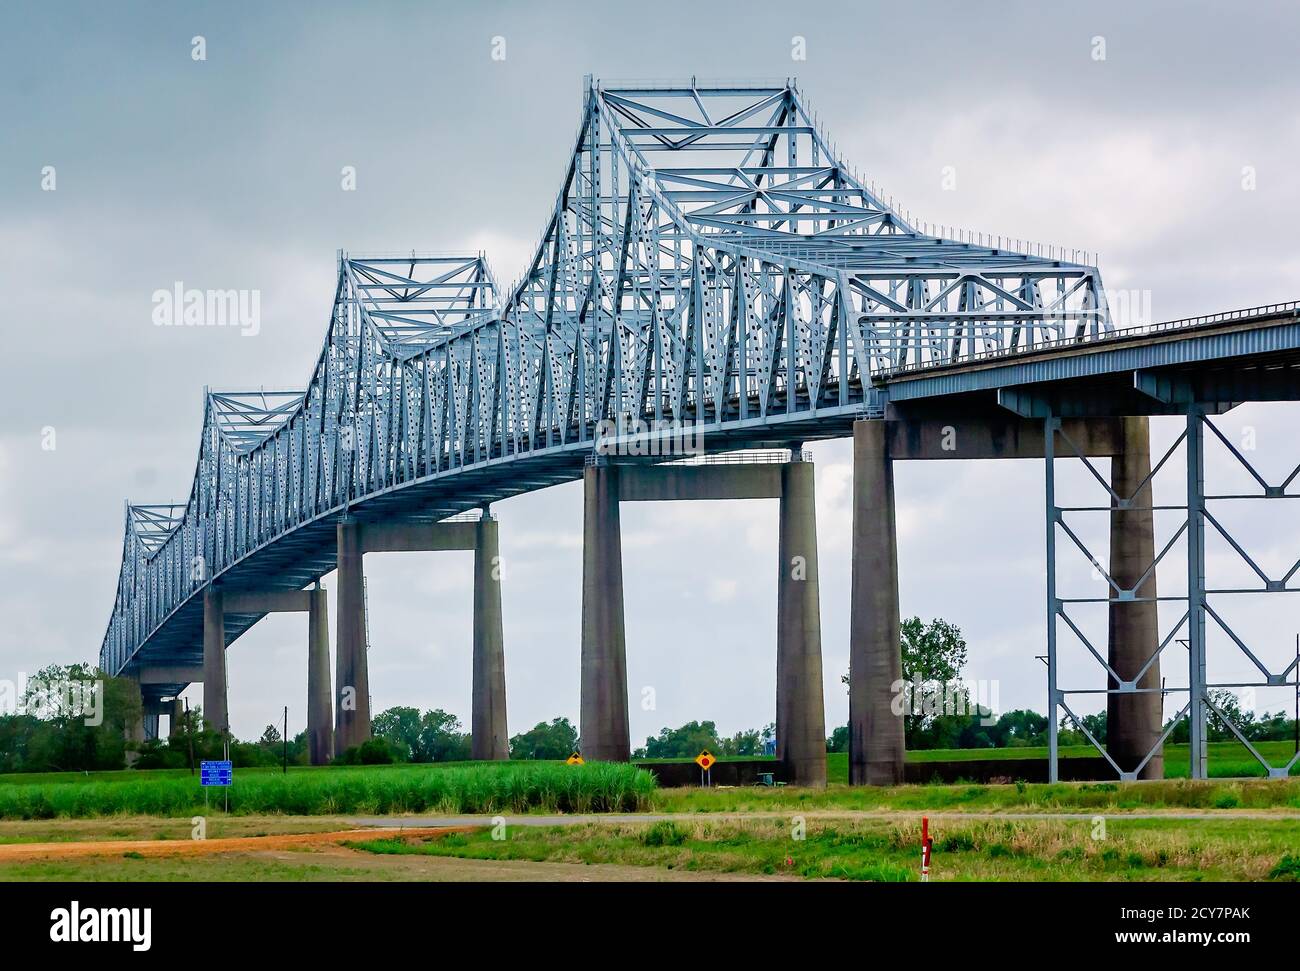 El puente Sunshine cruza el río Mississippi, 25 de agosto de 2020, en Convent, Louisiana. El puente voladizo conecta la Parroquia de Ascensión y Santiago. Foto de stock